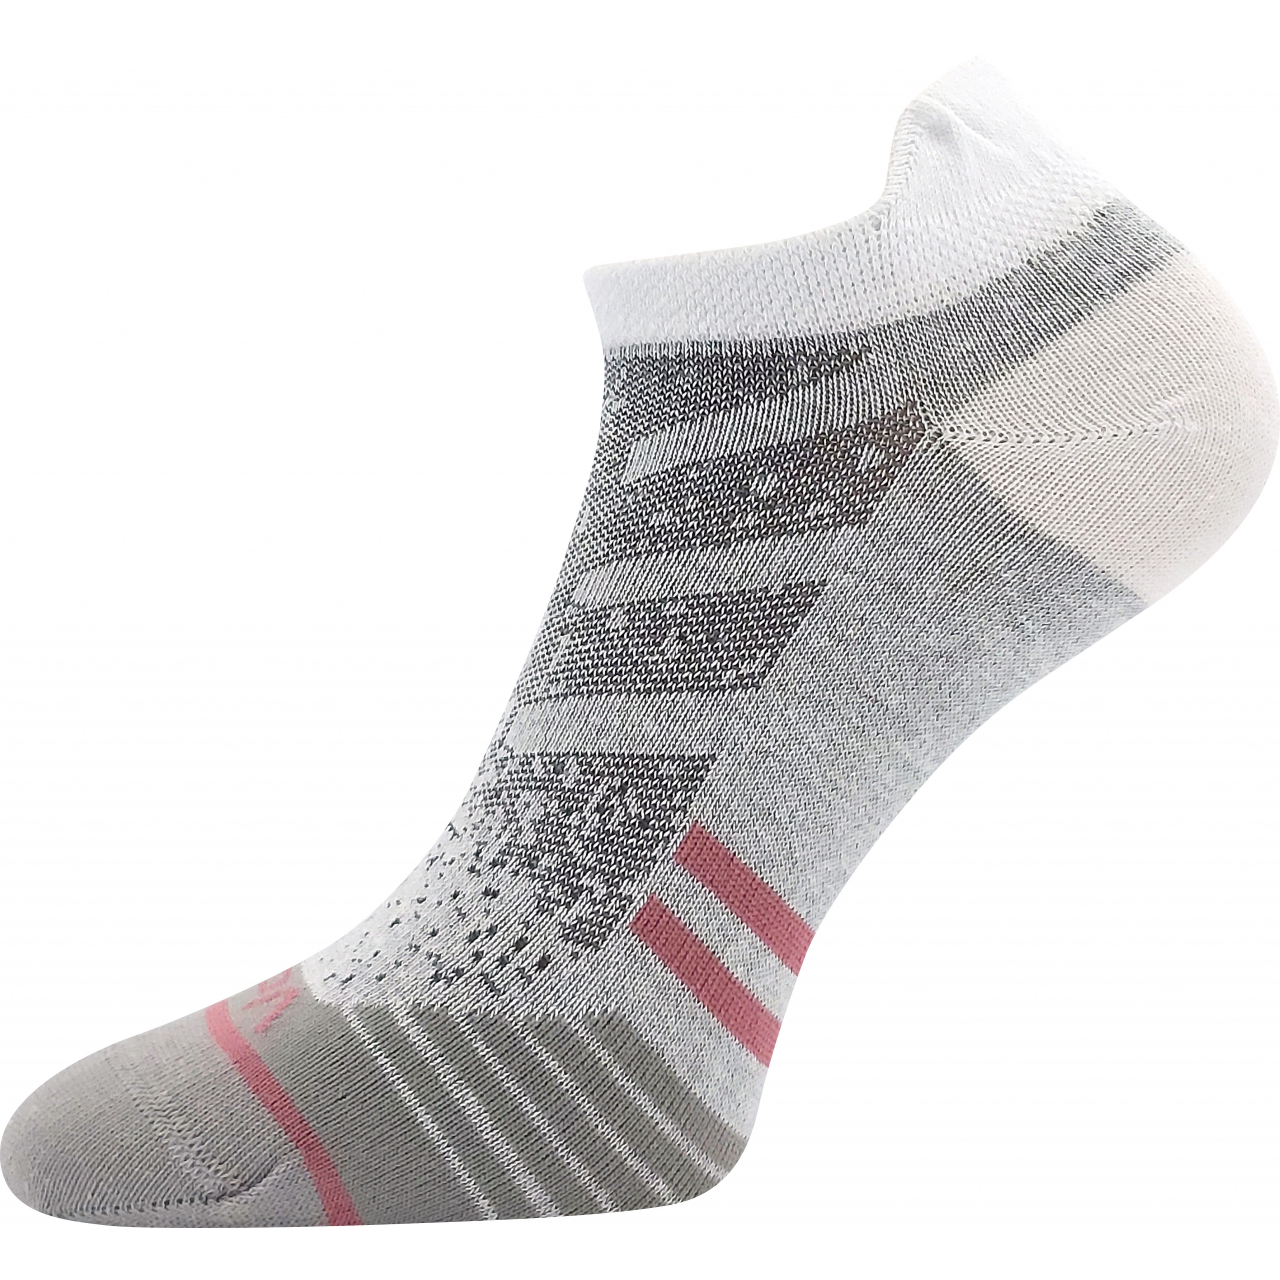 Ponožky dámské sportovní Voxx Rex 17 - bílé, 39-42